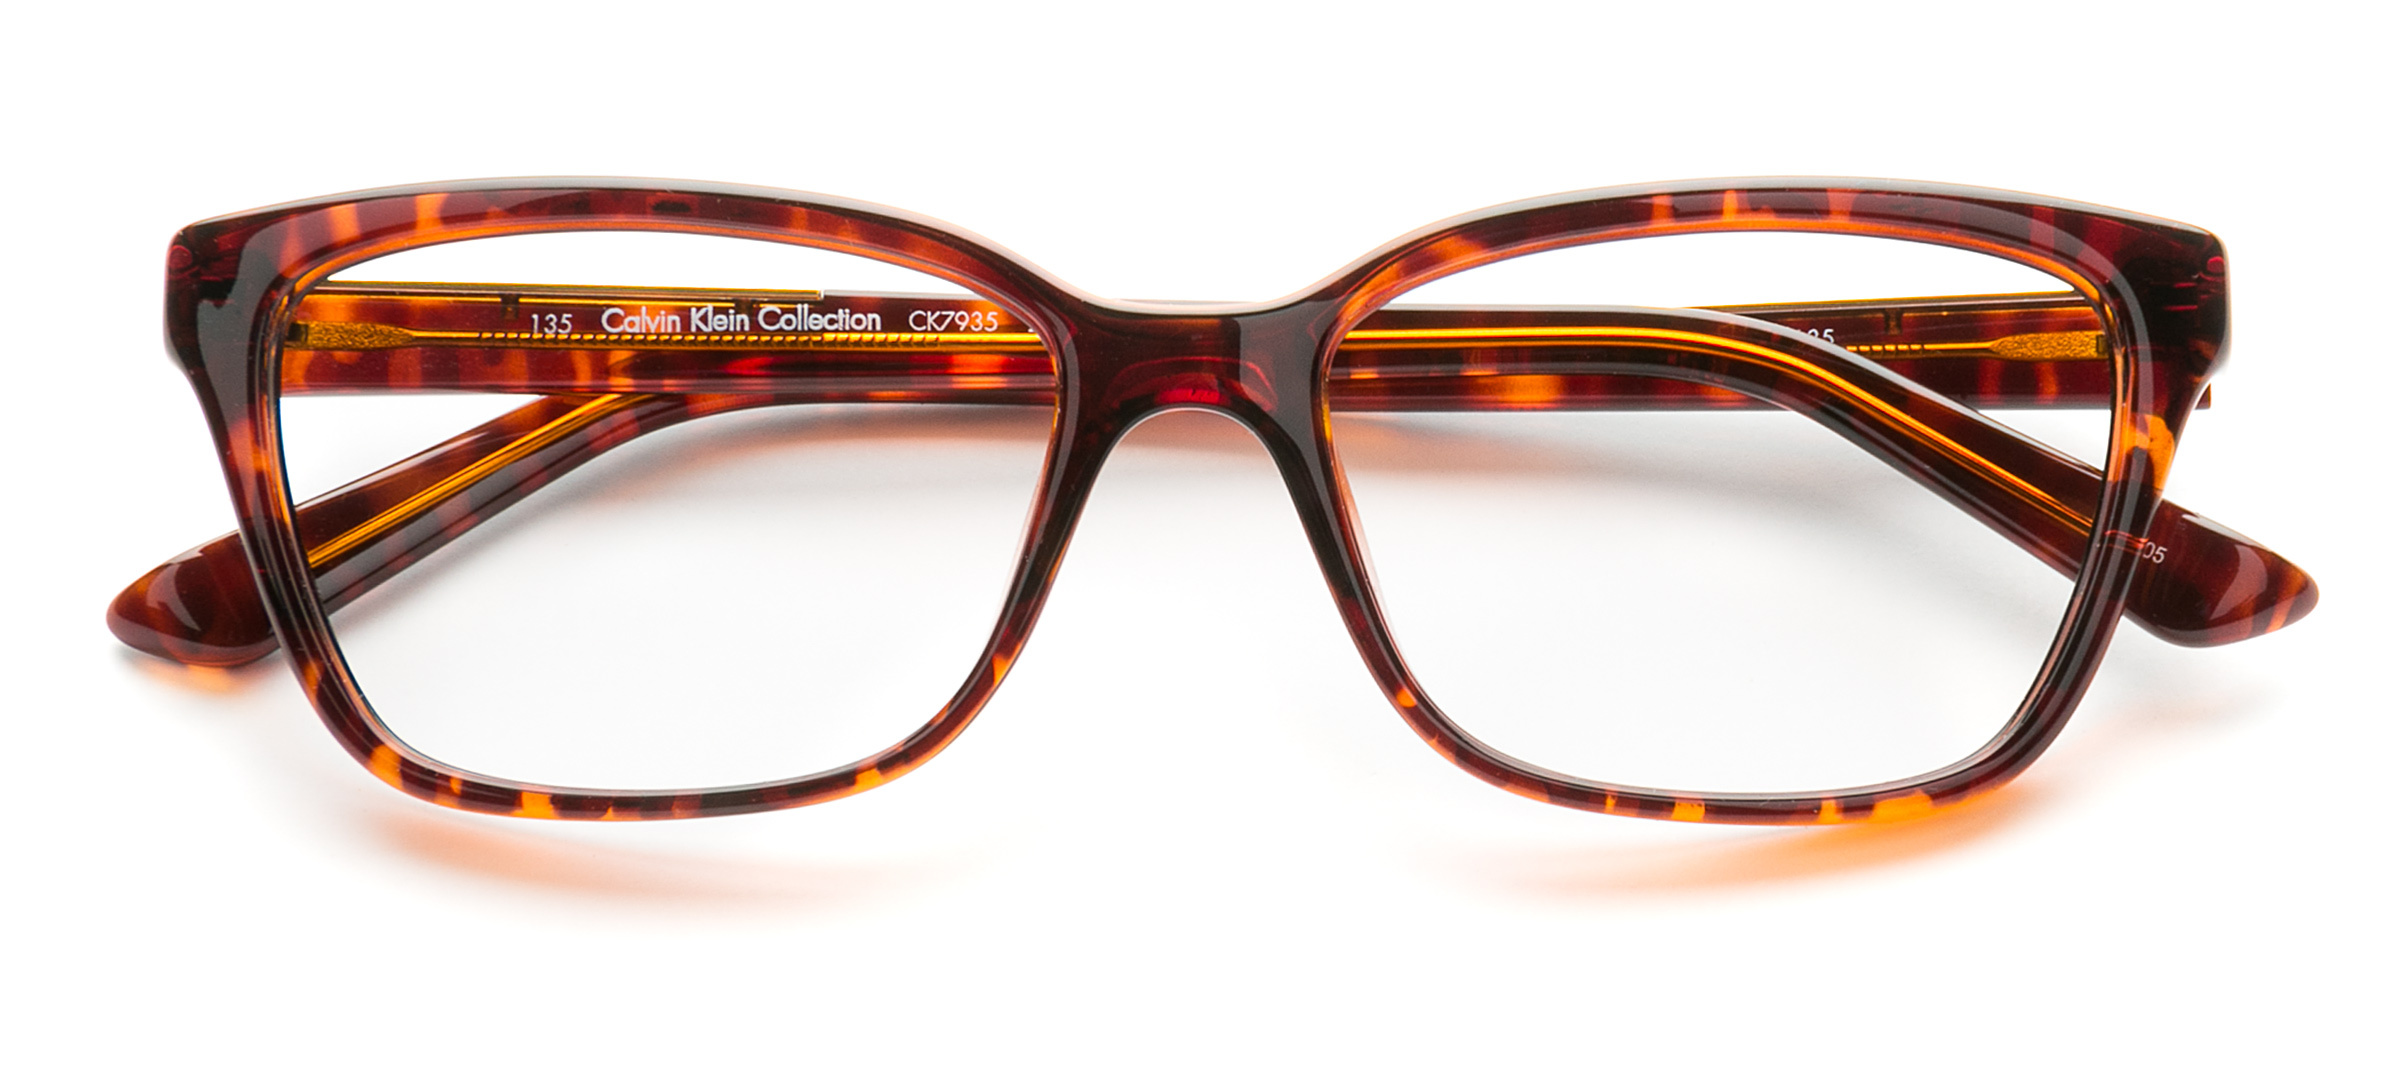 Women's Glasses - buy women's eyeglasses frames online | Clearly